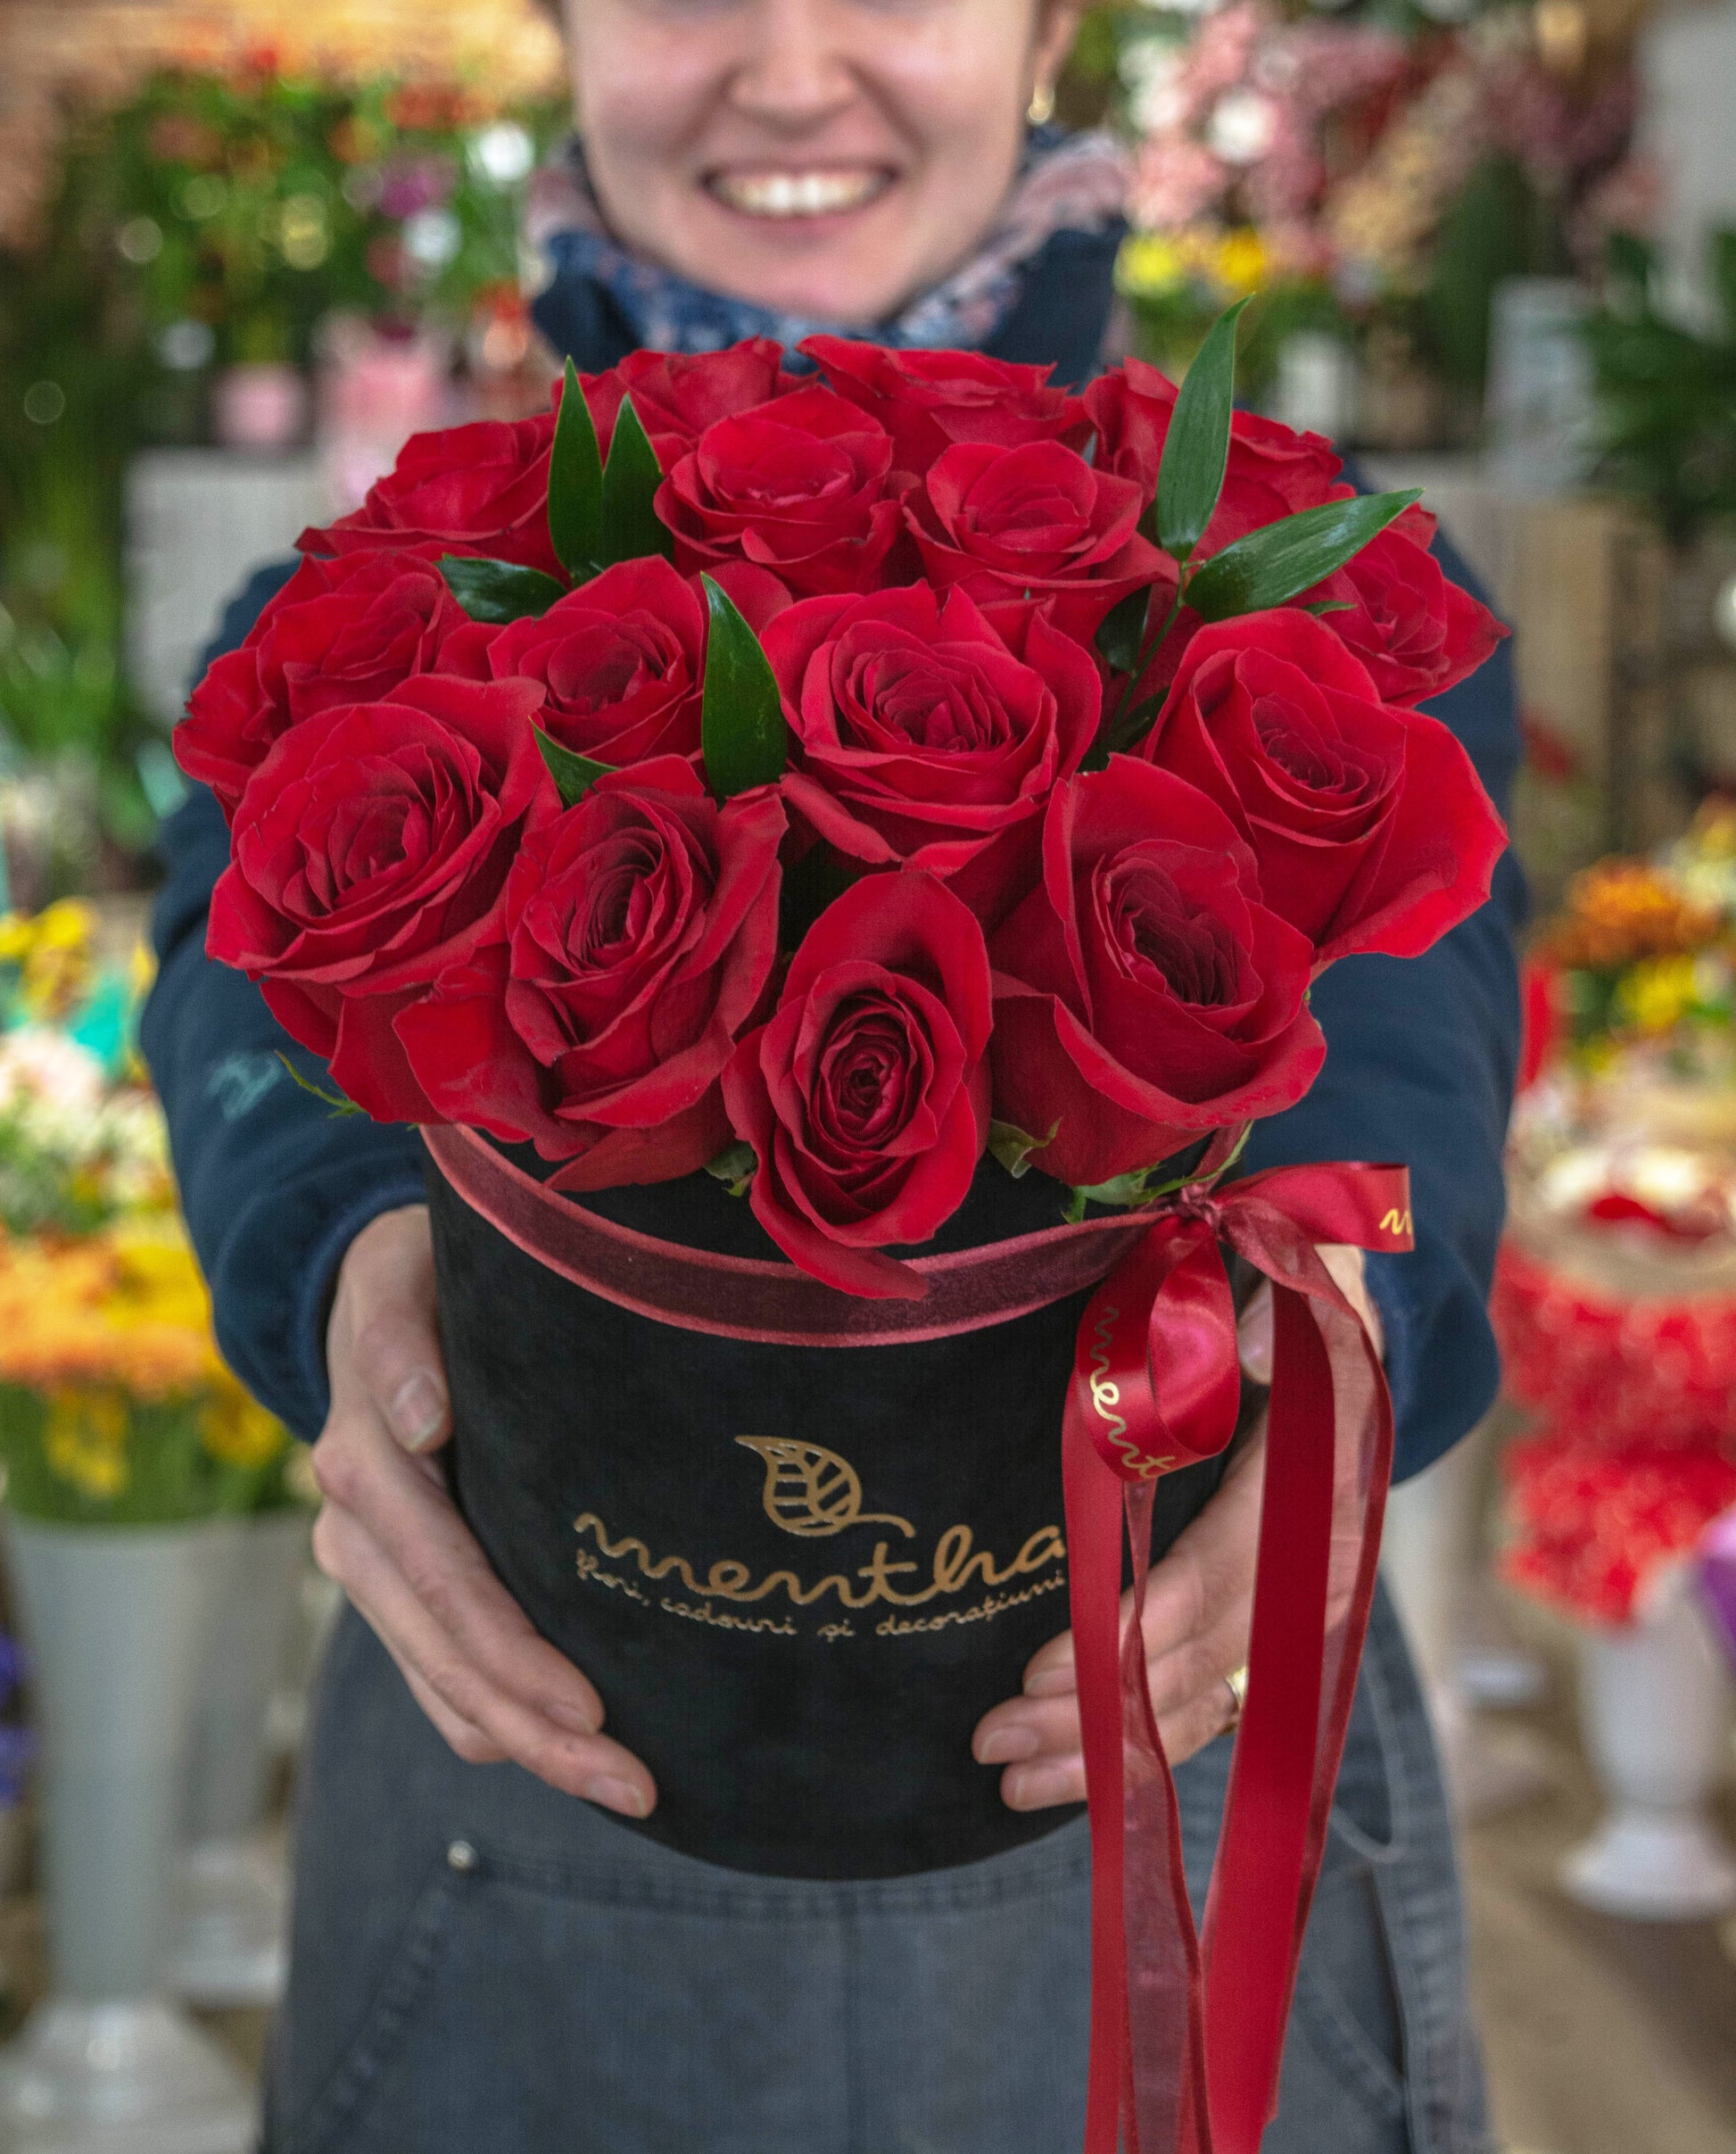 Trandafiri roșii, expresia perfectă a iubirii: imaginea a doua din colecția noastră, surprinzând prospețimea și frumusețea acestor flori, cu livrare GRATUITĂ în Resita.